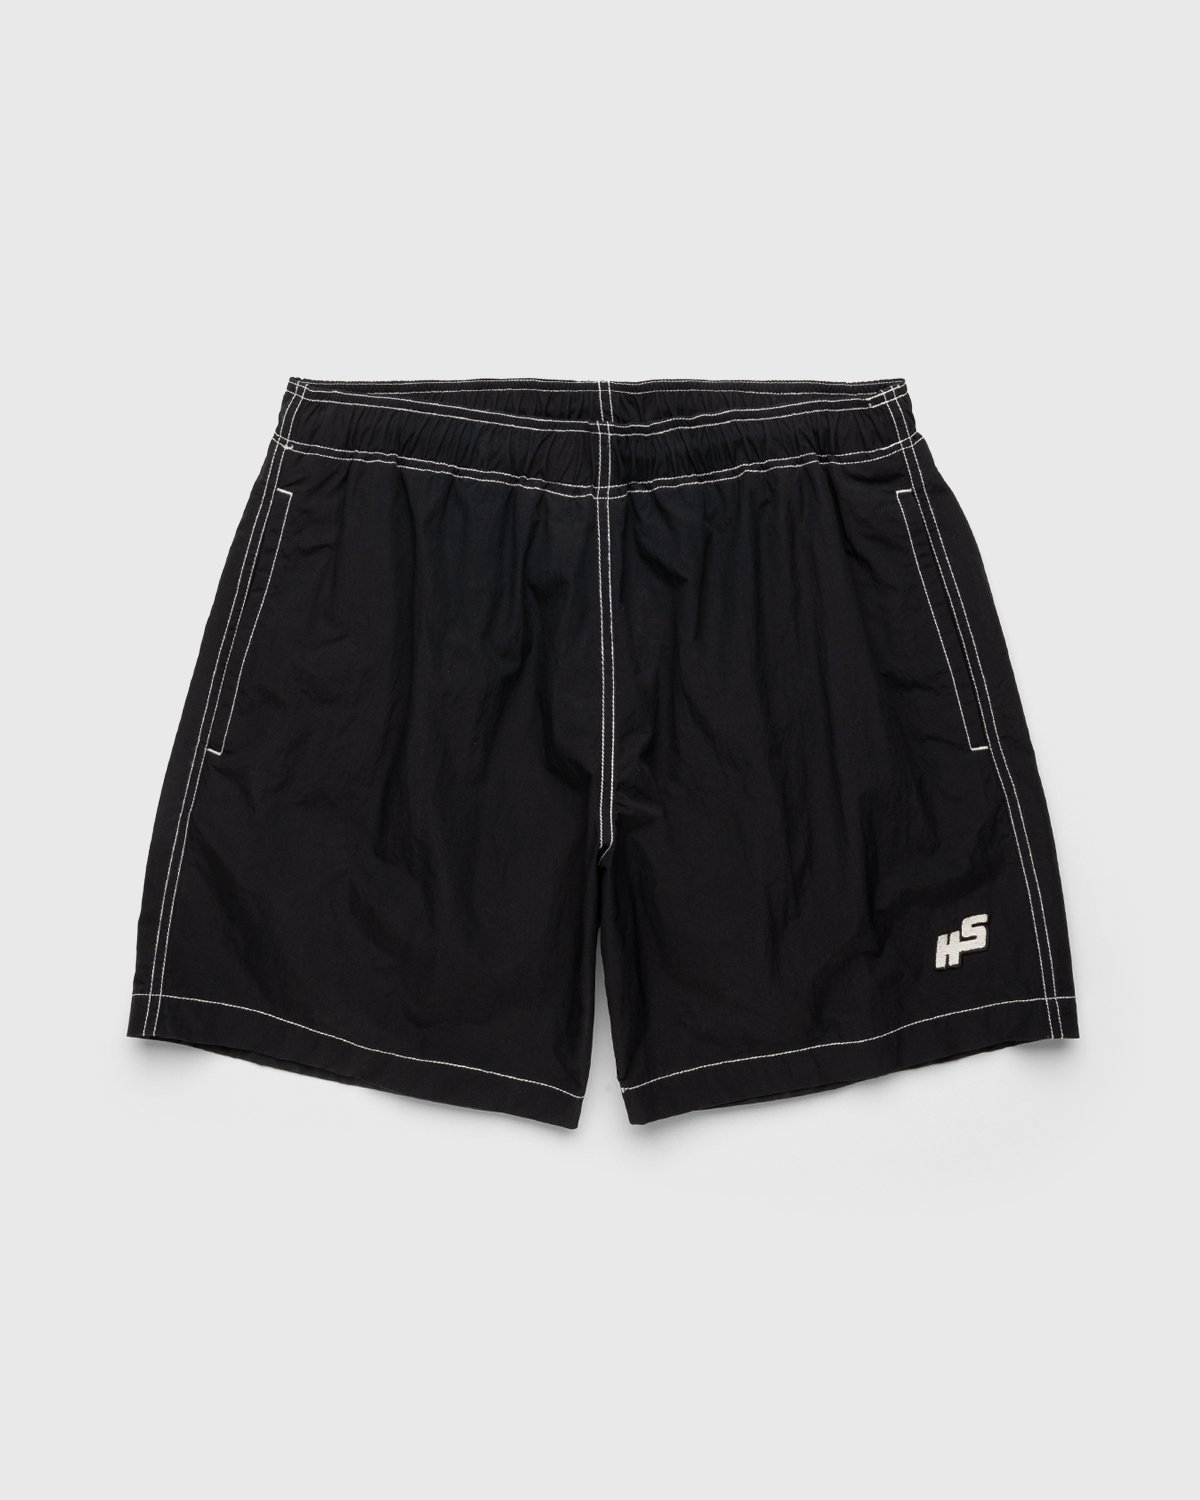 Highsnobiety - Contrast Brushed Nylon Water Shorts Black - Clothing - Black - Image 1